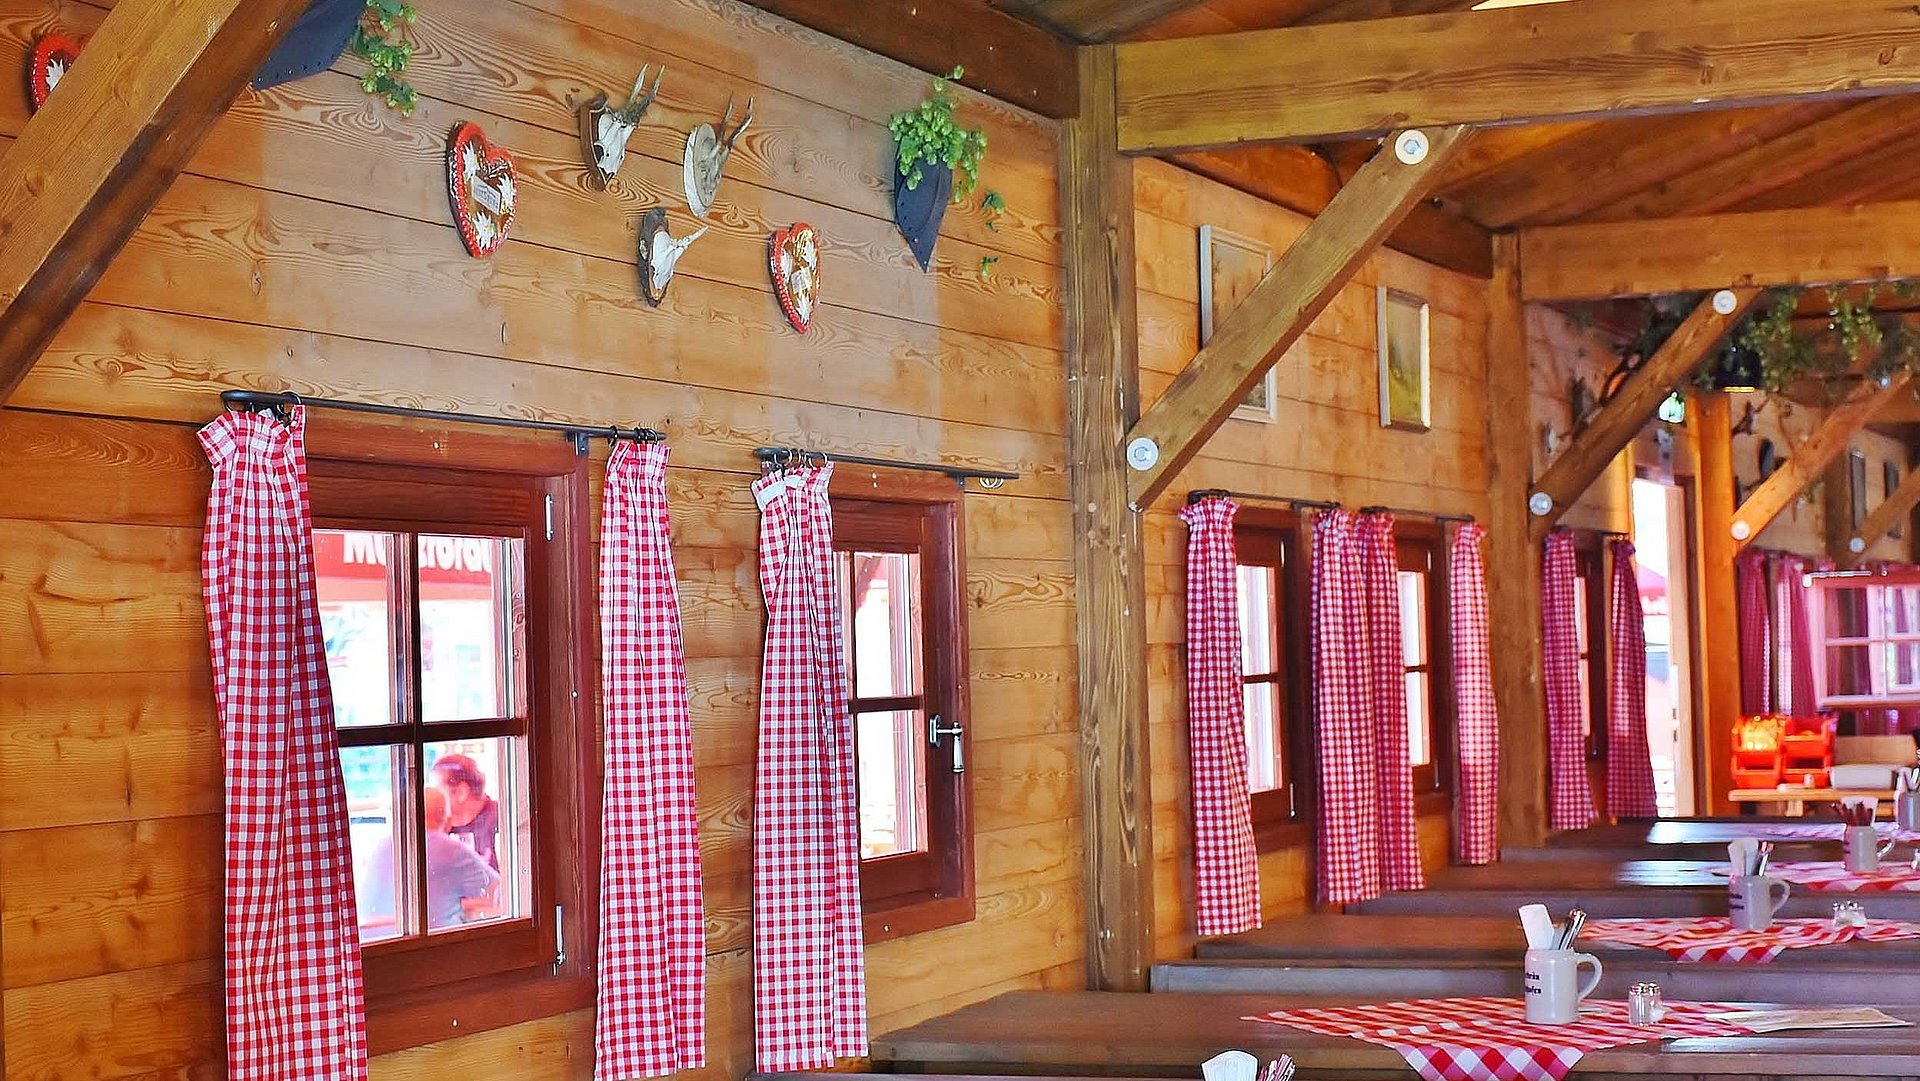 Bayerische Küche in Unterfranken - Innenraum einer Gaststätte im bayerischen Stil